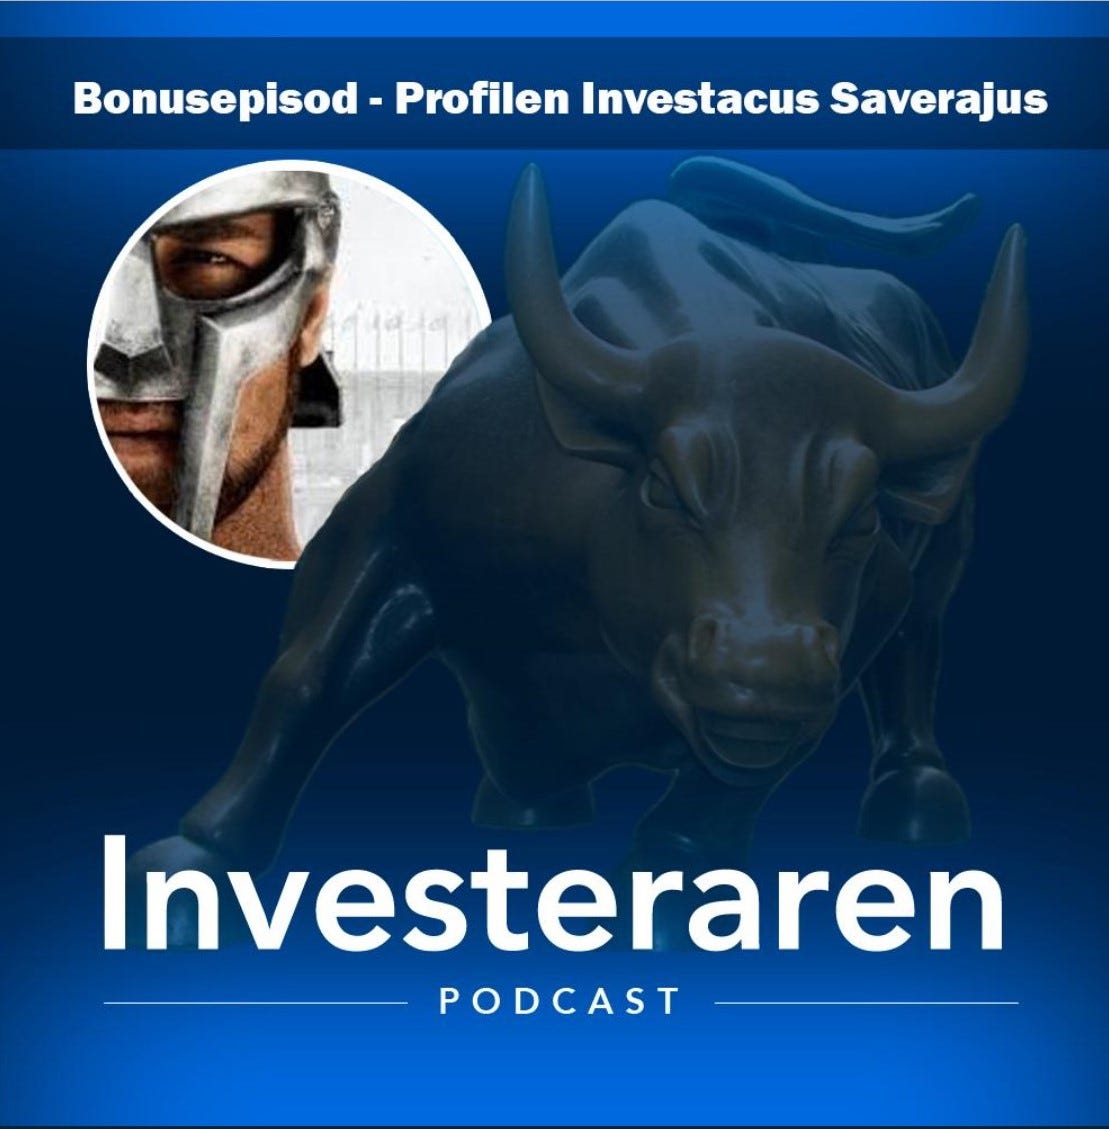 Investerarens podcast - starring mig själv! +en nyhet Investacus Saverajus